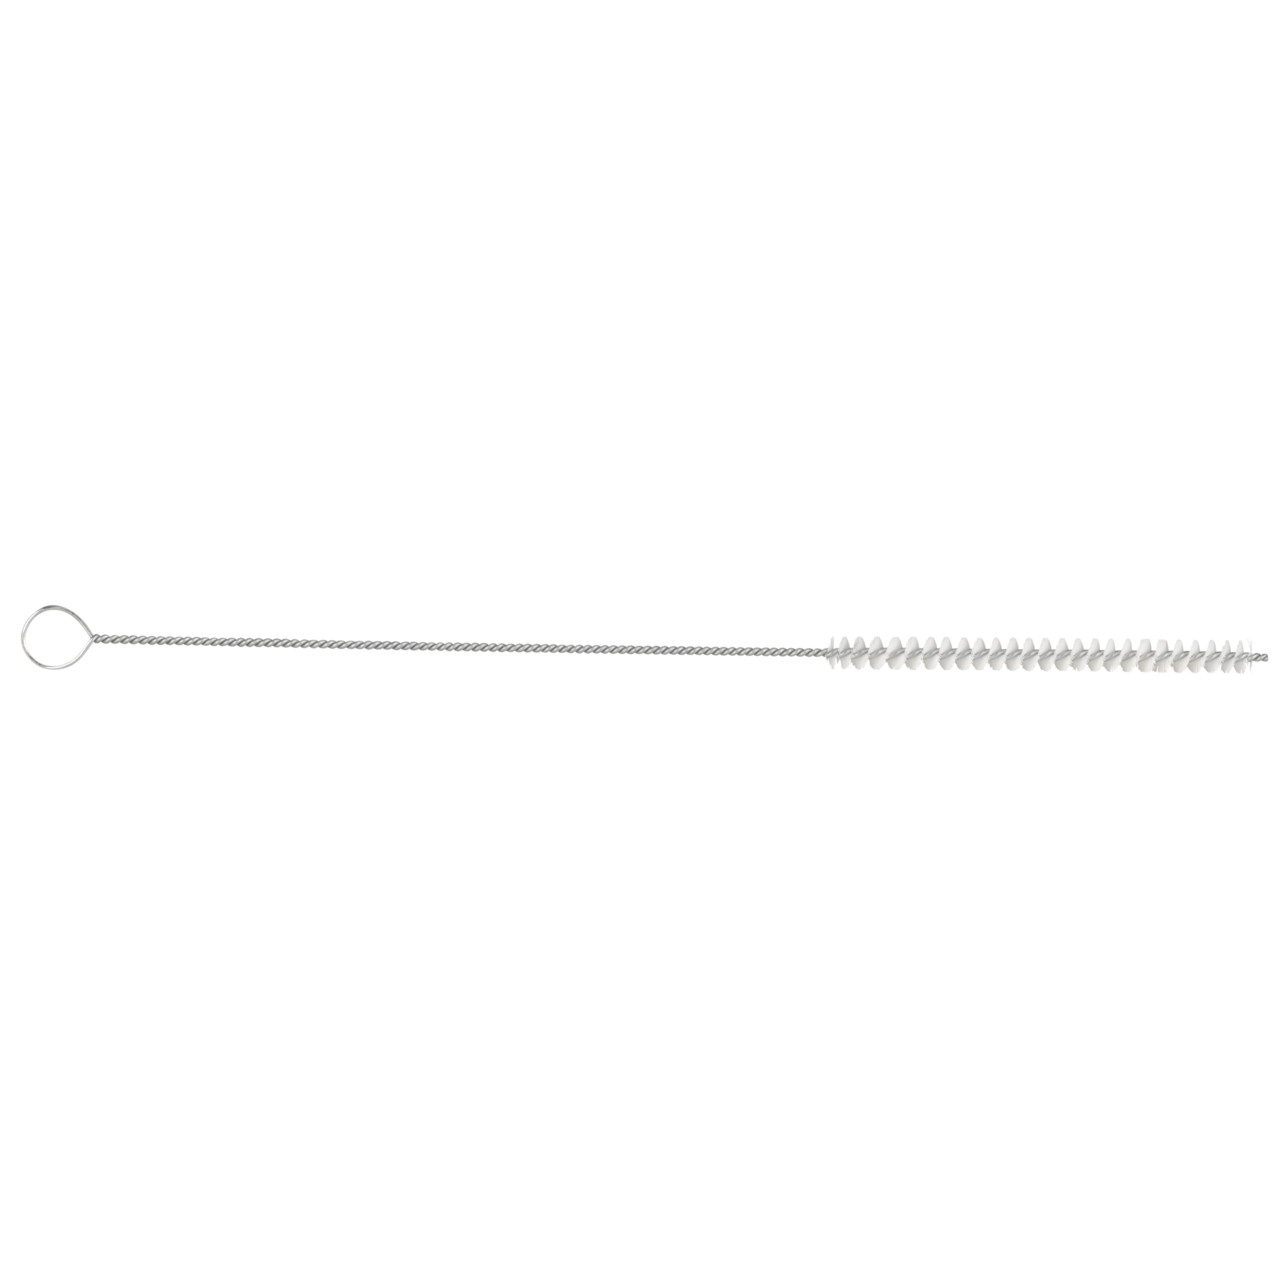 TYROLIT spazzola per tubi cilindrici D-I 4-300 Per uso universale, forma: 18ROODG - (spazzola per tubi cilindrici), Art. 34203556